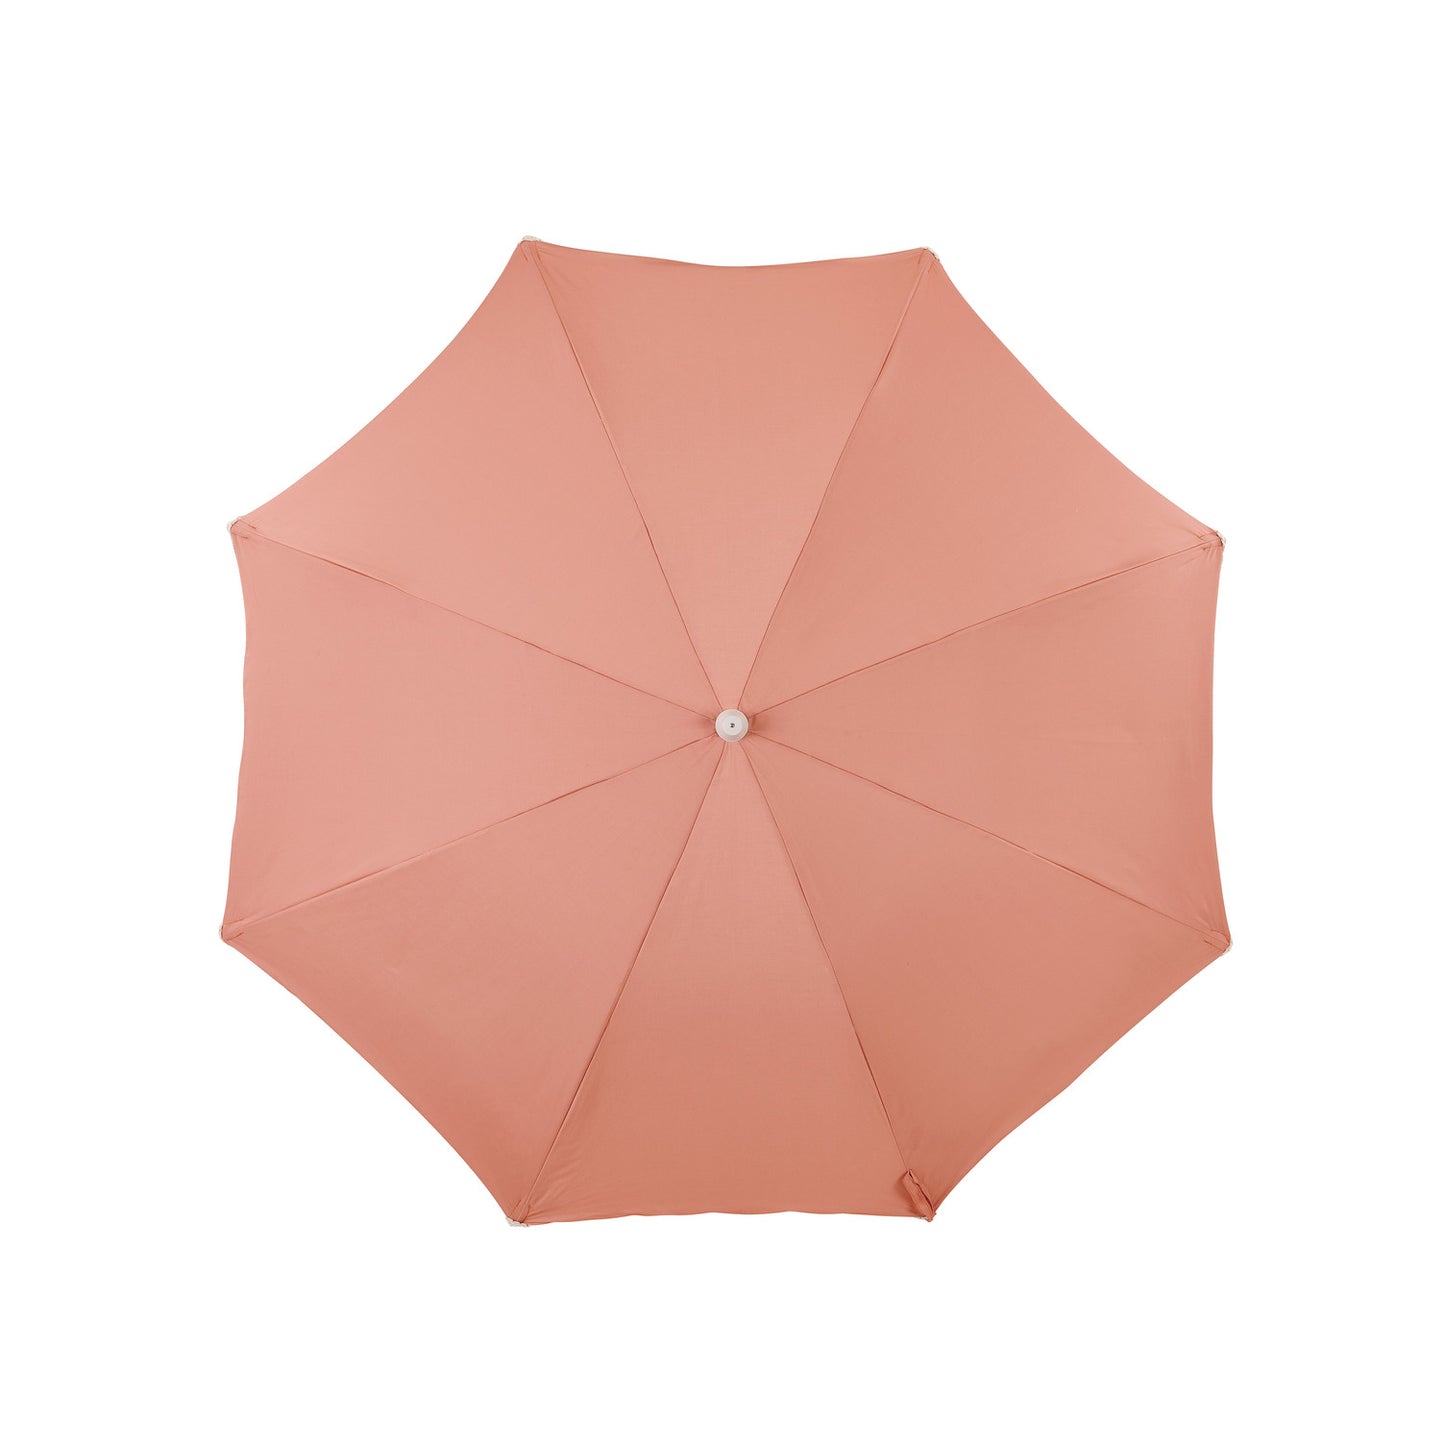 OZtrail Palm Club - Beach Umbrella